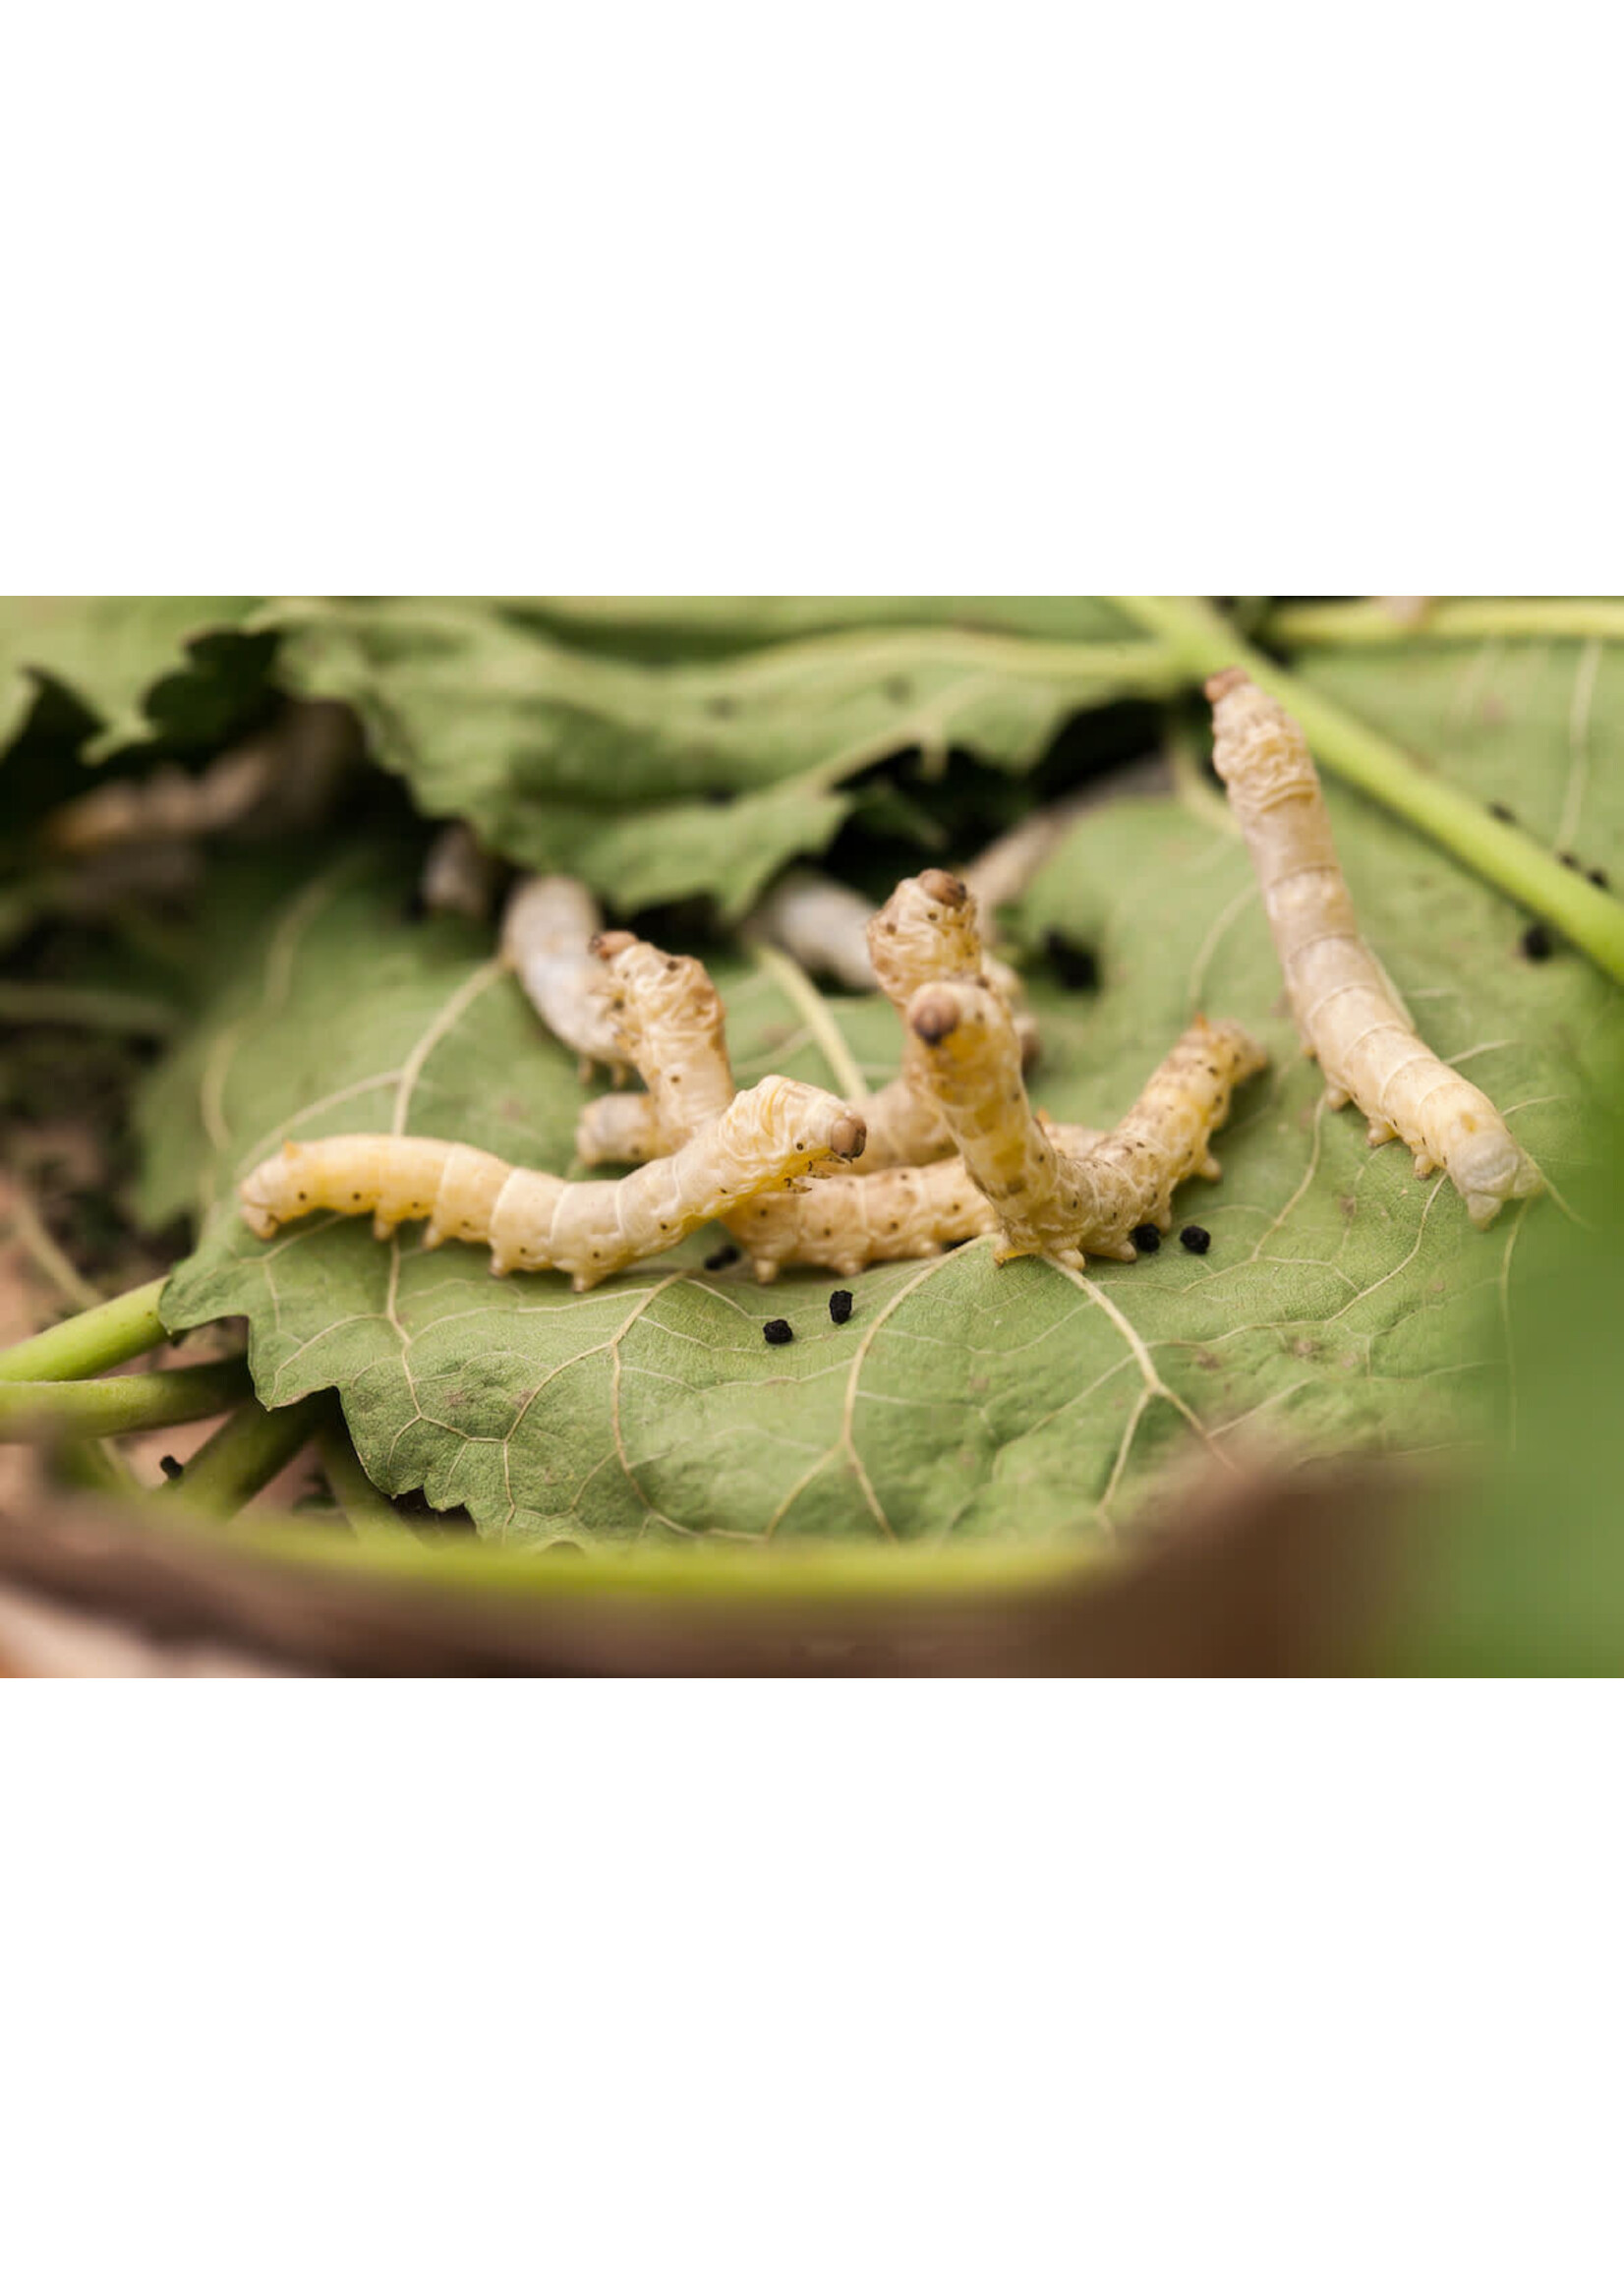 IBW Cricket Farm IBW - Medium Silk Worms qty 10